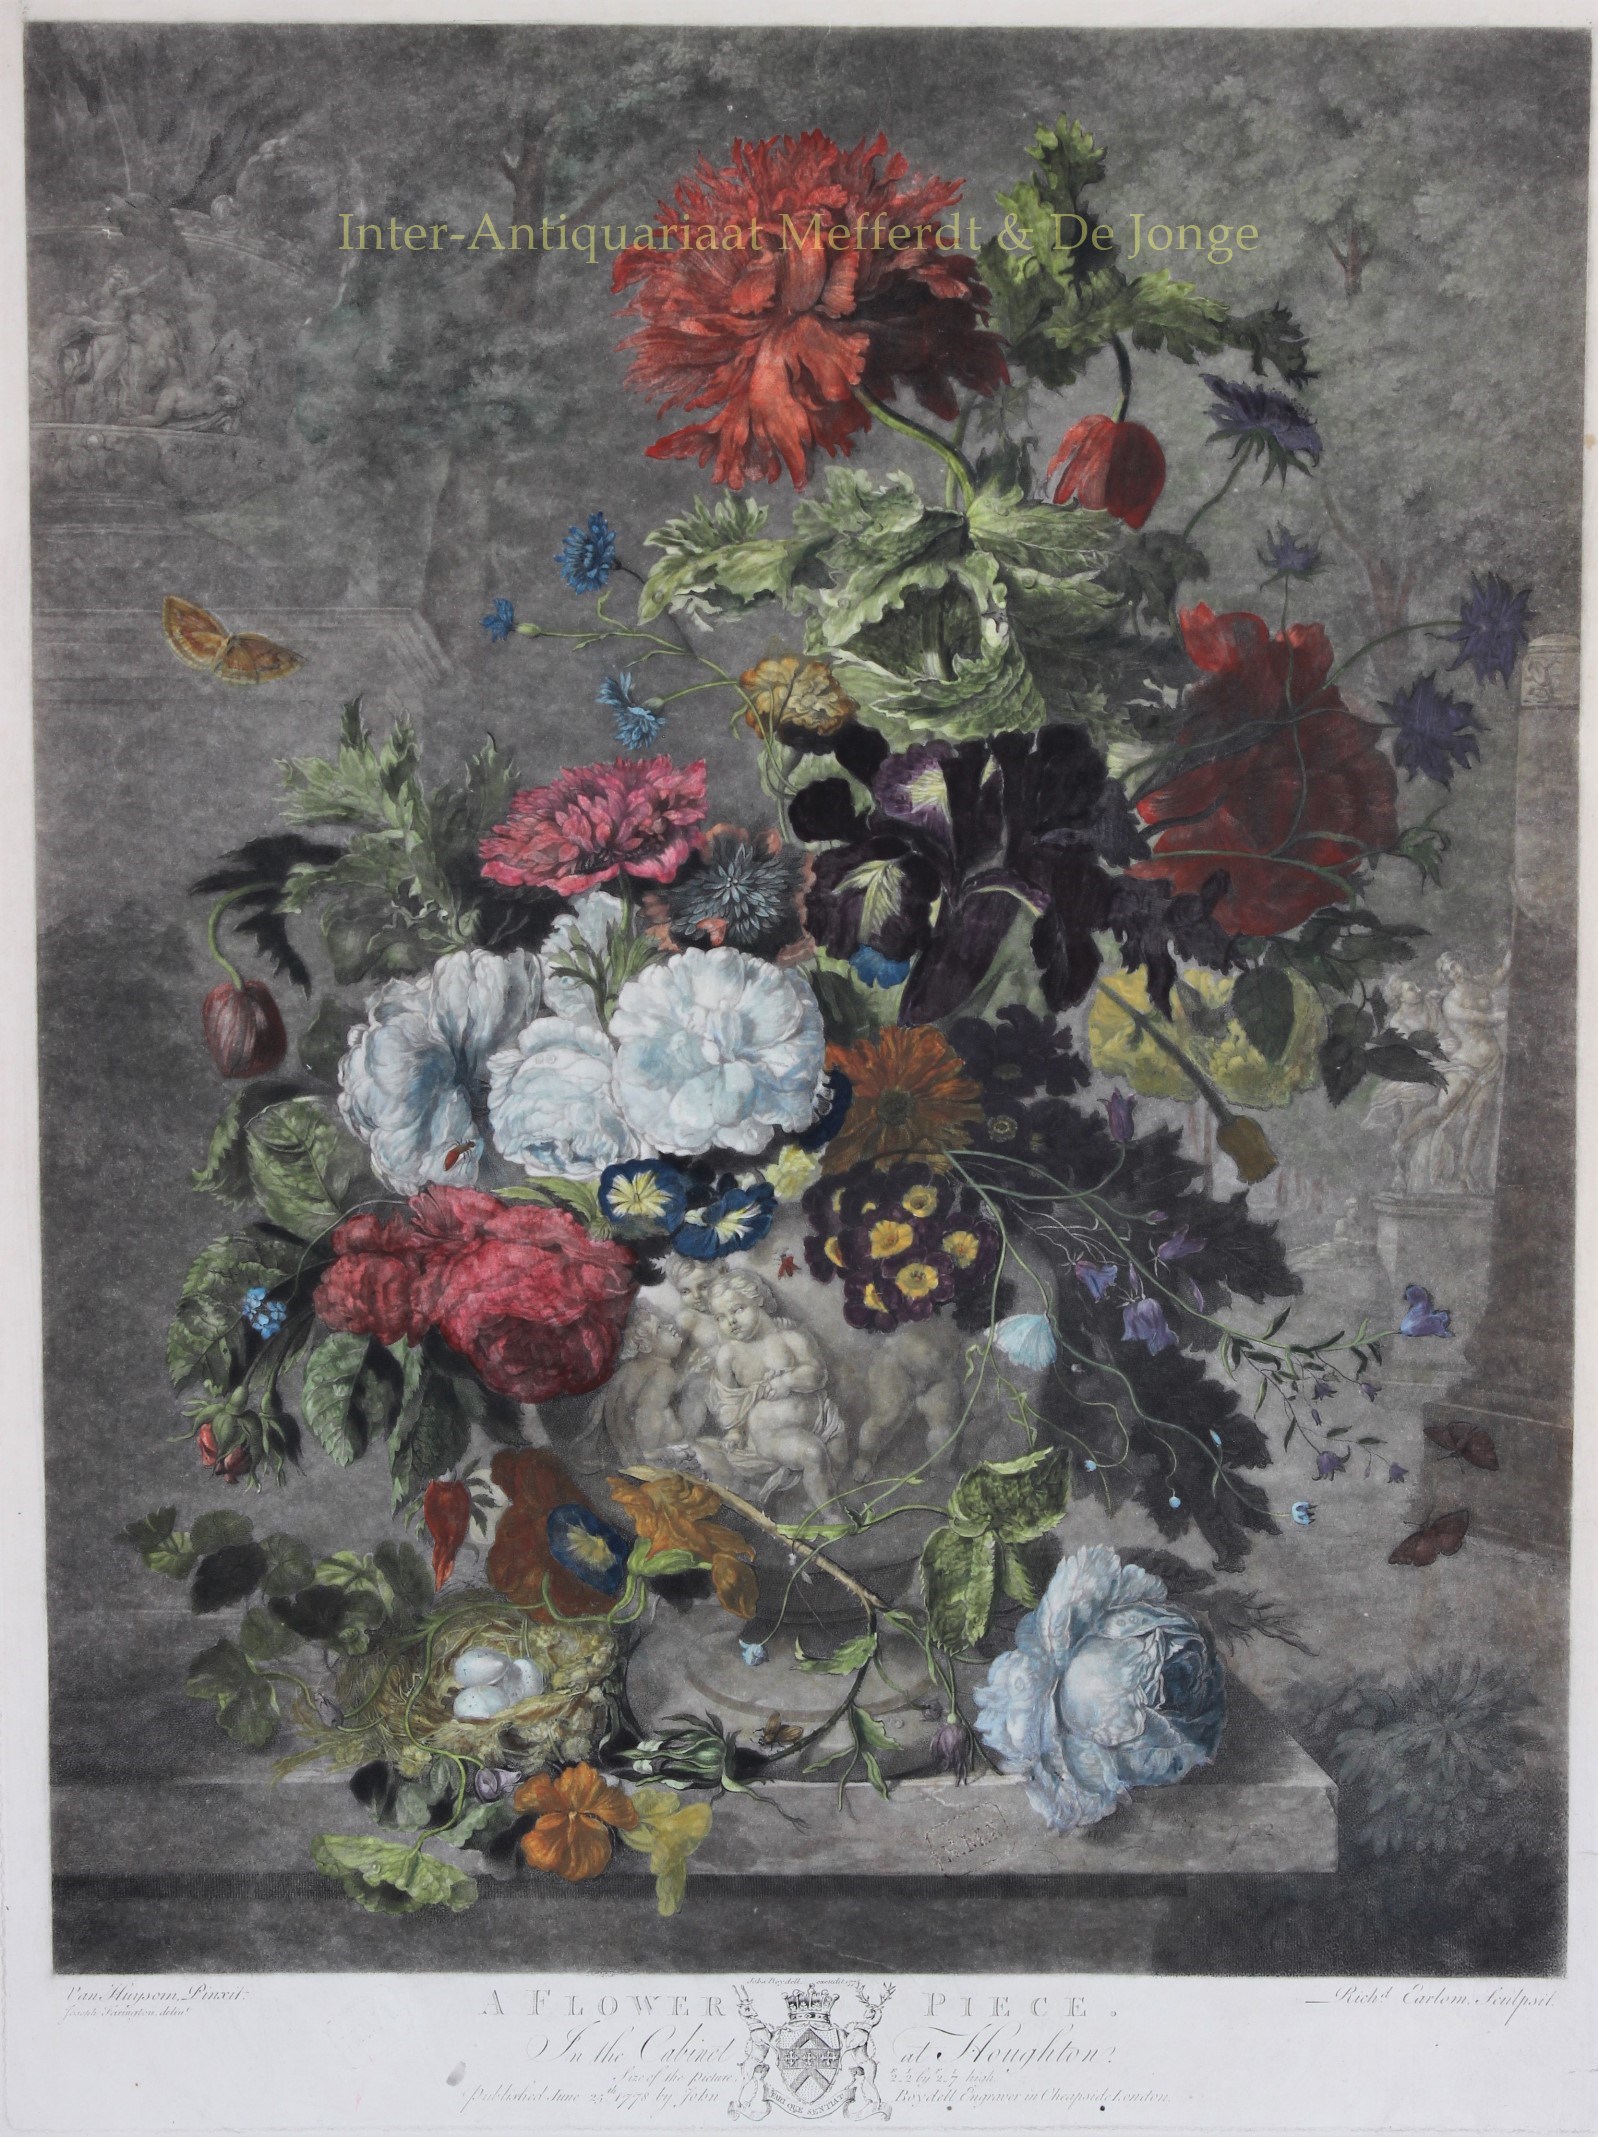 Earlom-- Richard (1743-1822) - A Flower Piece - after Jan van Huysum, 1778